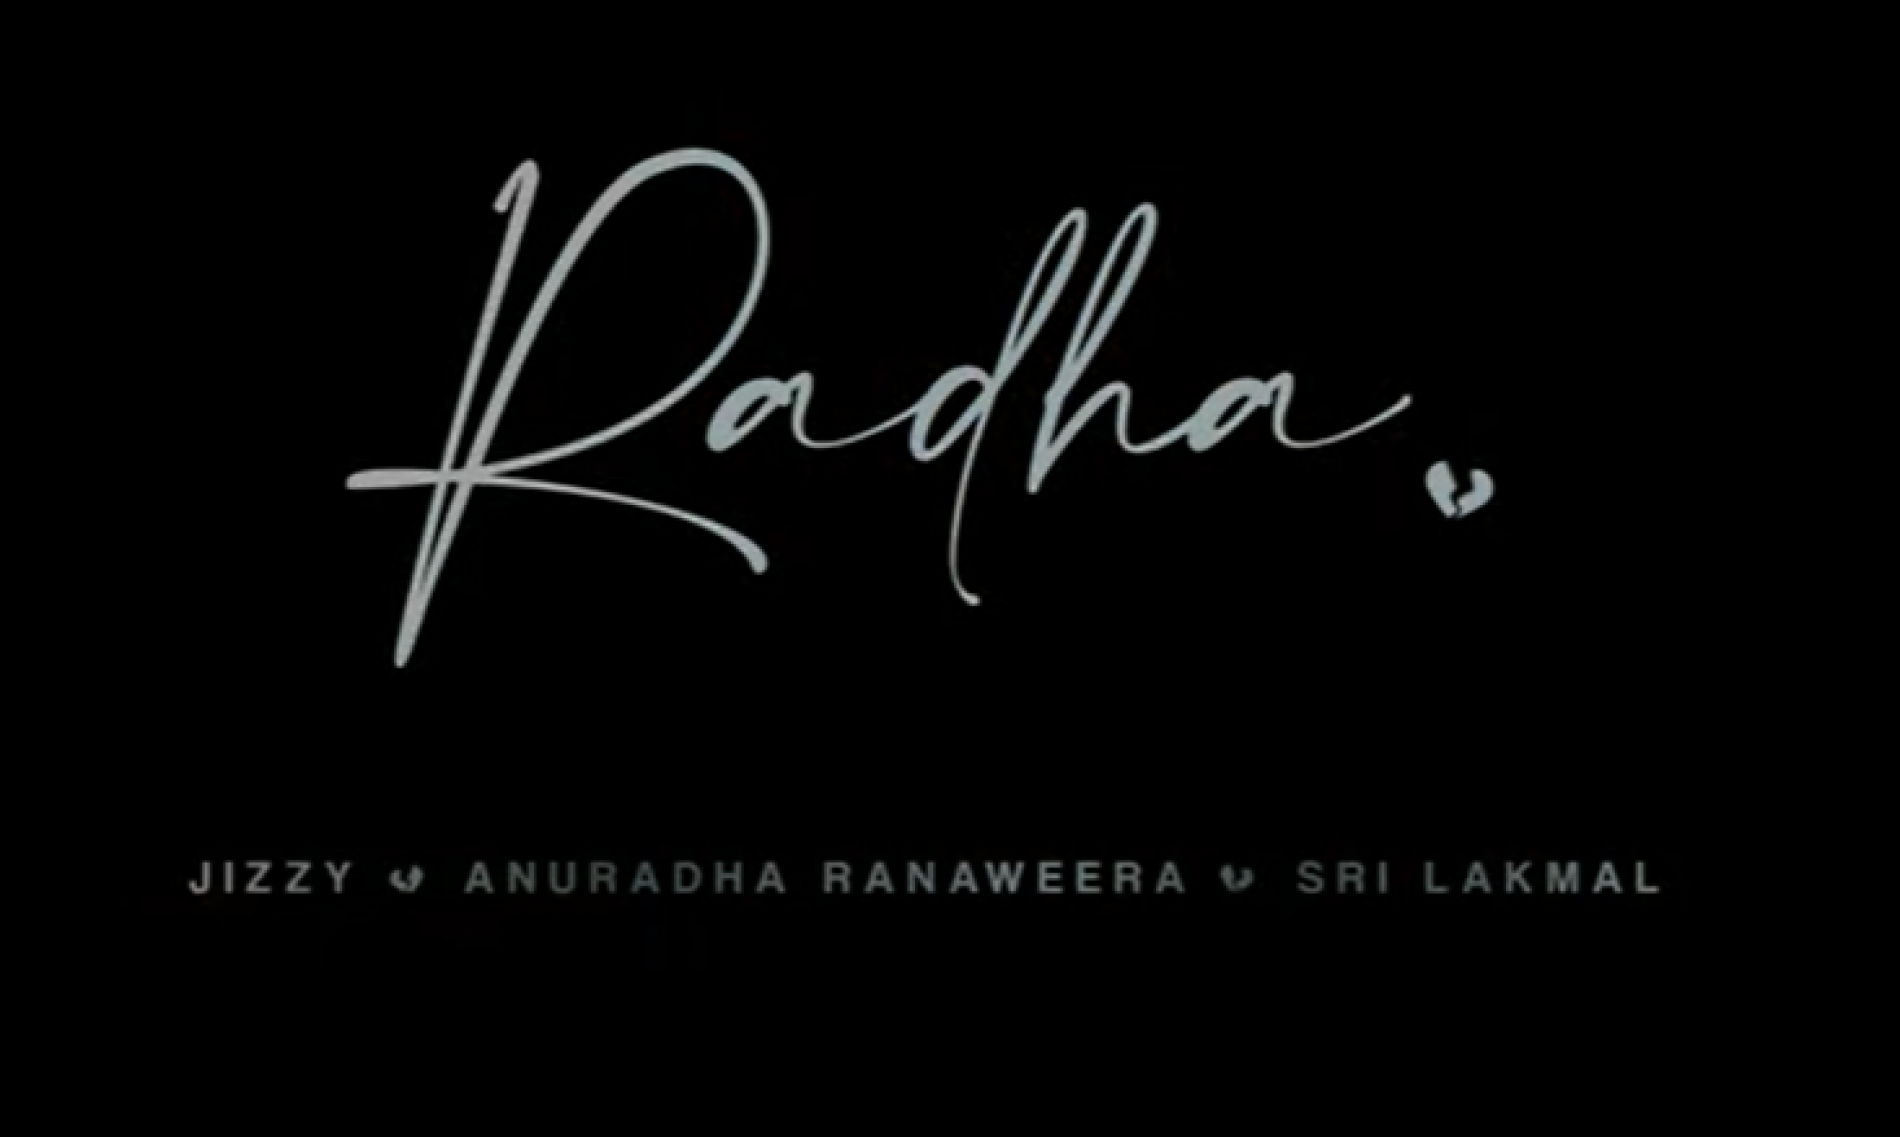 New Music : Radha (‍රාධා) – Jizzy | Anuradha Ranaweera & Sri Lakmal